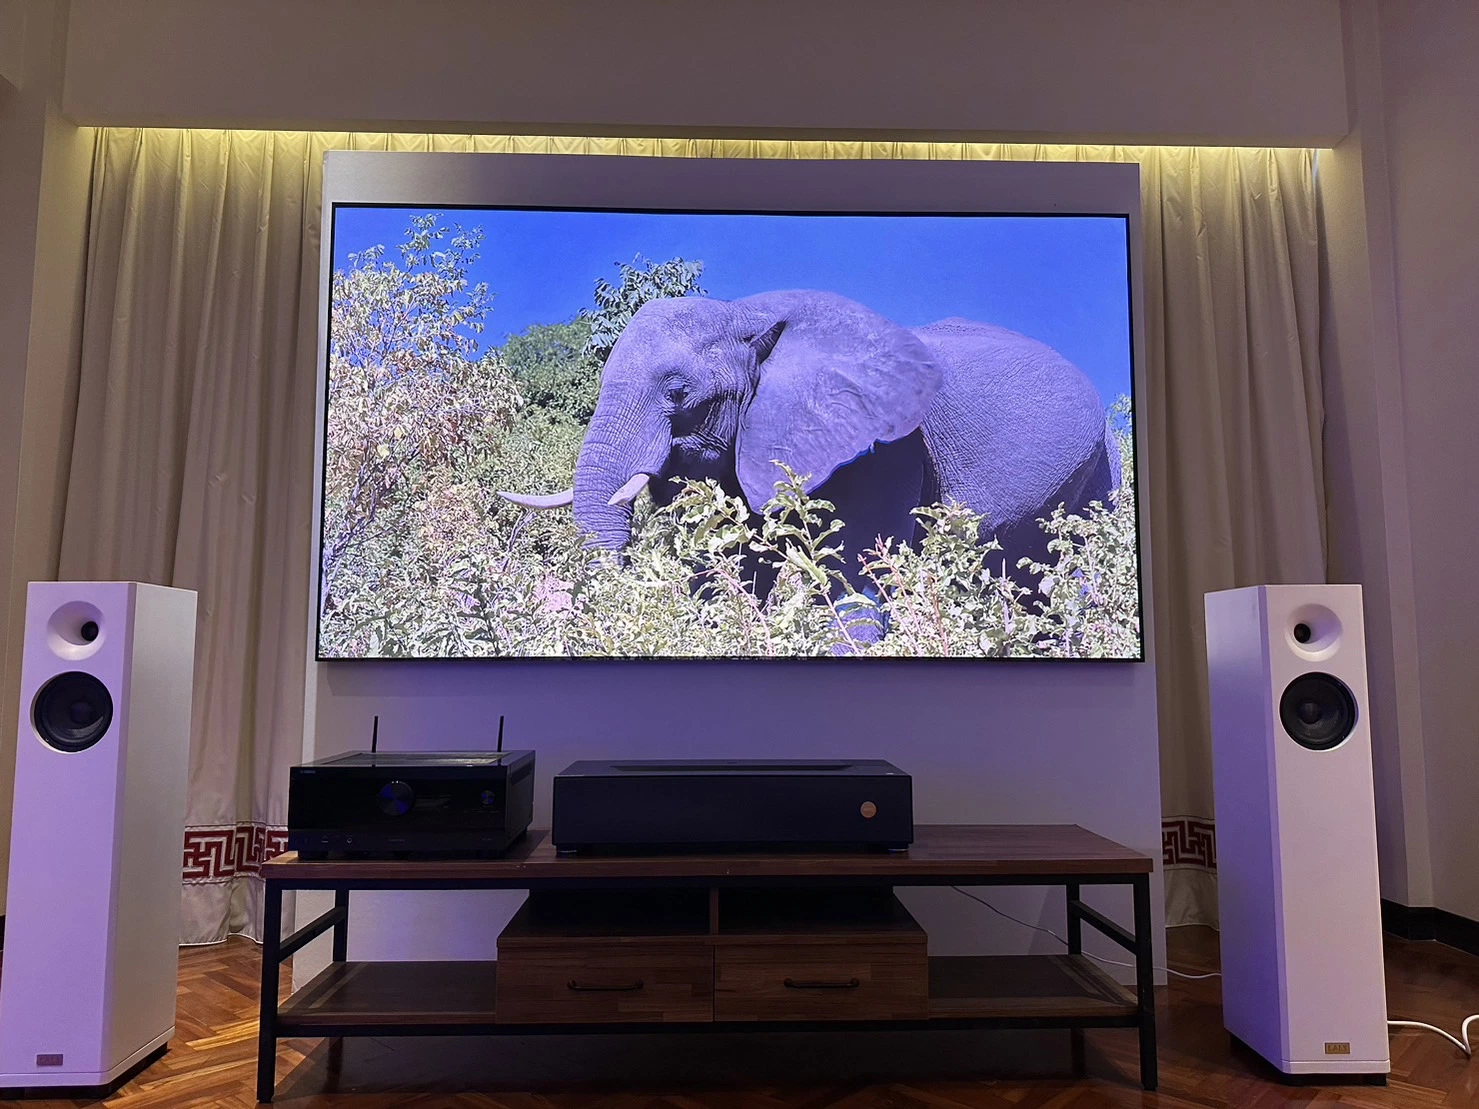 Fscreen 120 pouces série aura Fresnel ALR rejet de lumière ambiante Ecran de projection pour projecteur à ultra-courte focale téléviseurs laser Home Cinéma Home Cinema